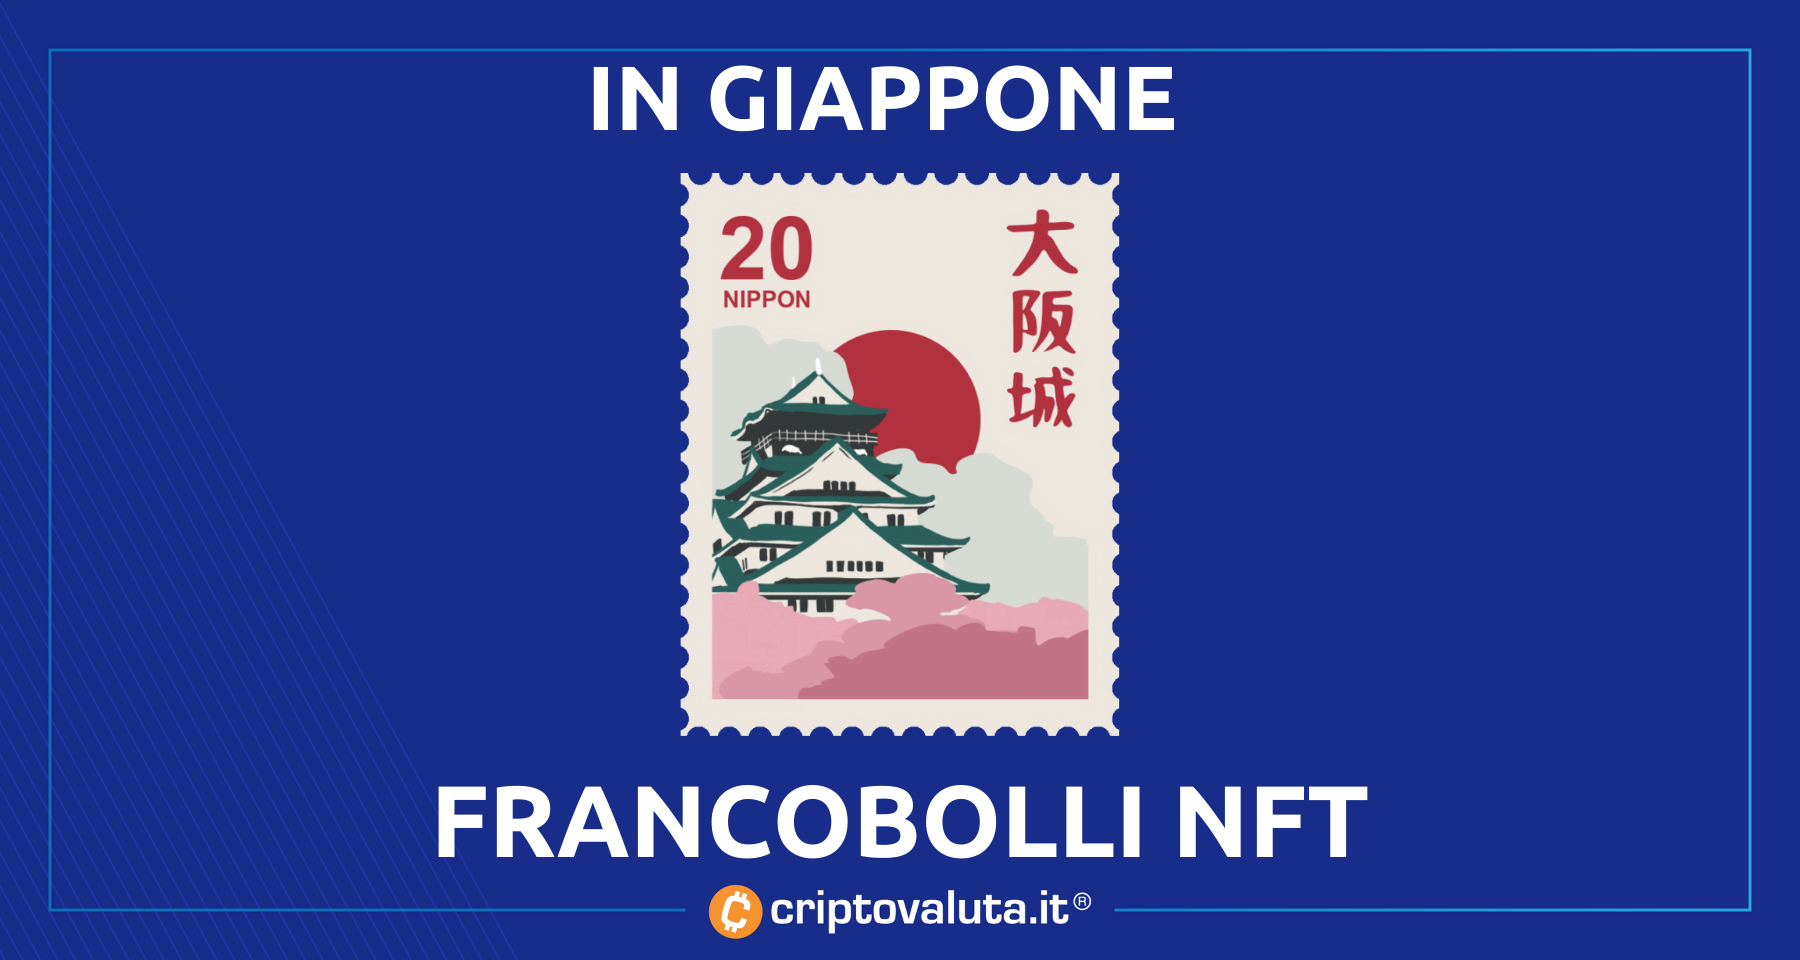 Poste Giapponesi: arrivano i francobolli in NFT! | I dettagli dell’iniziativa